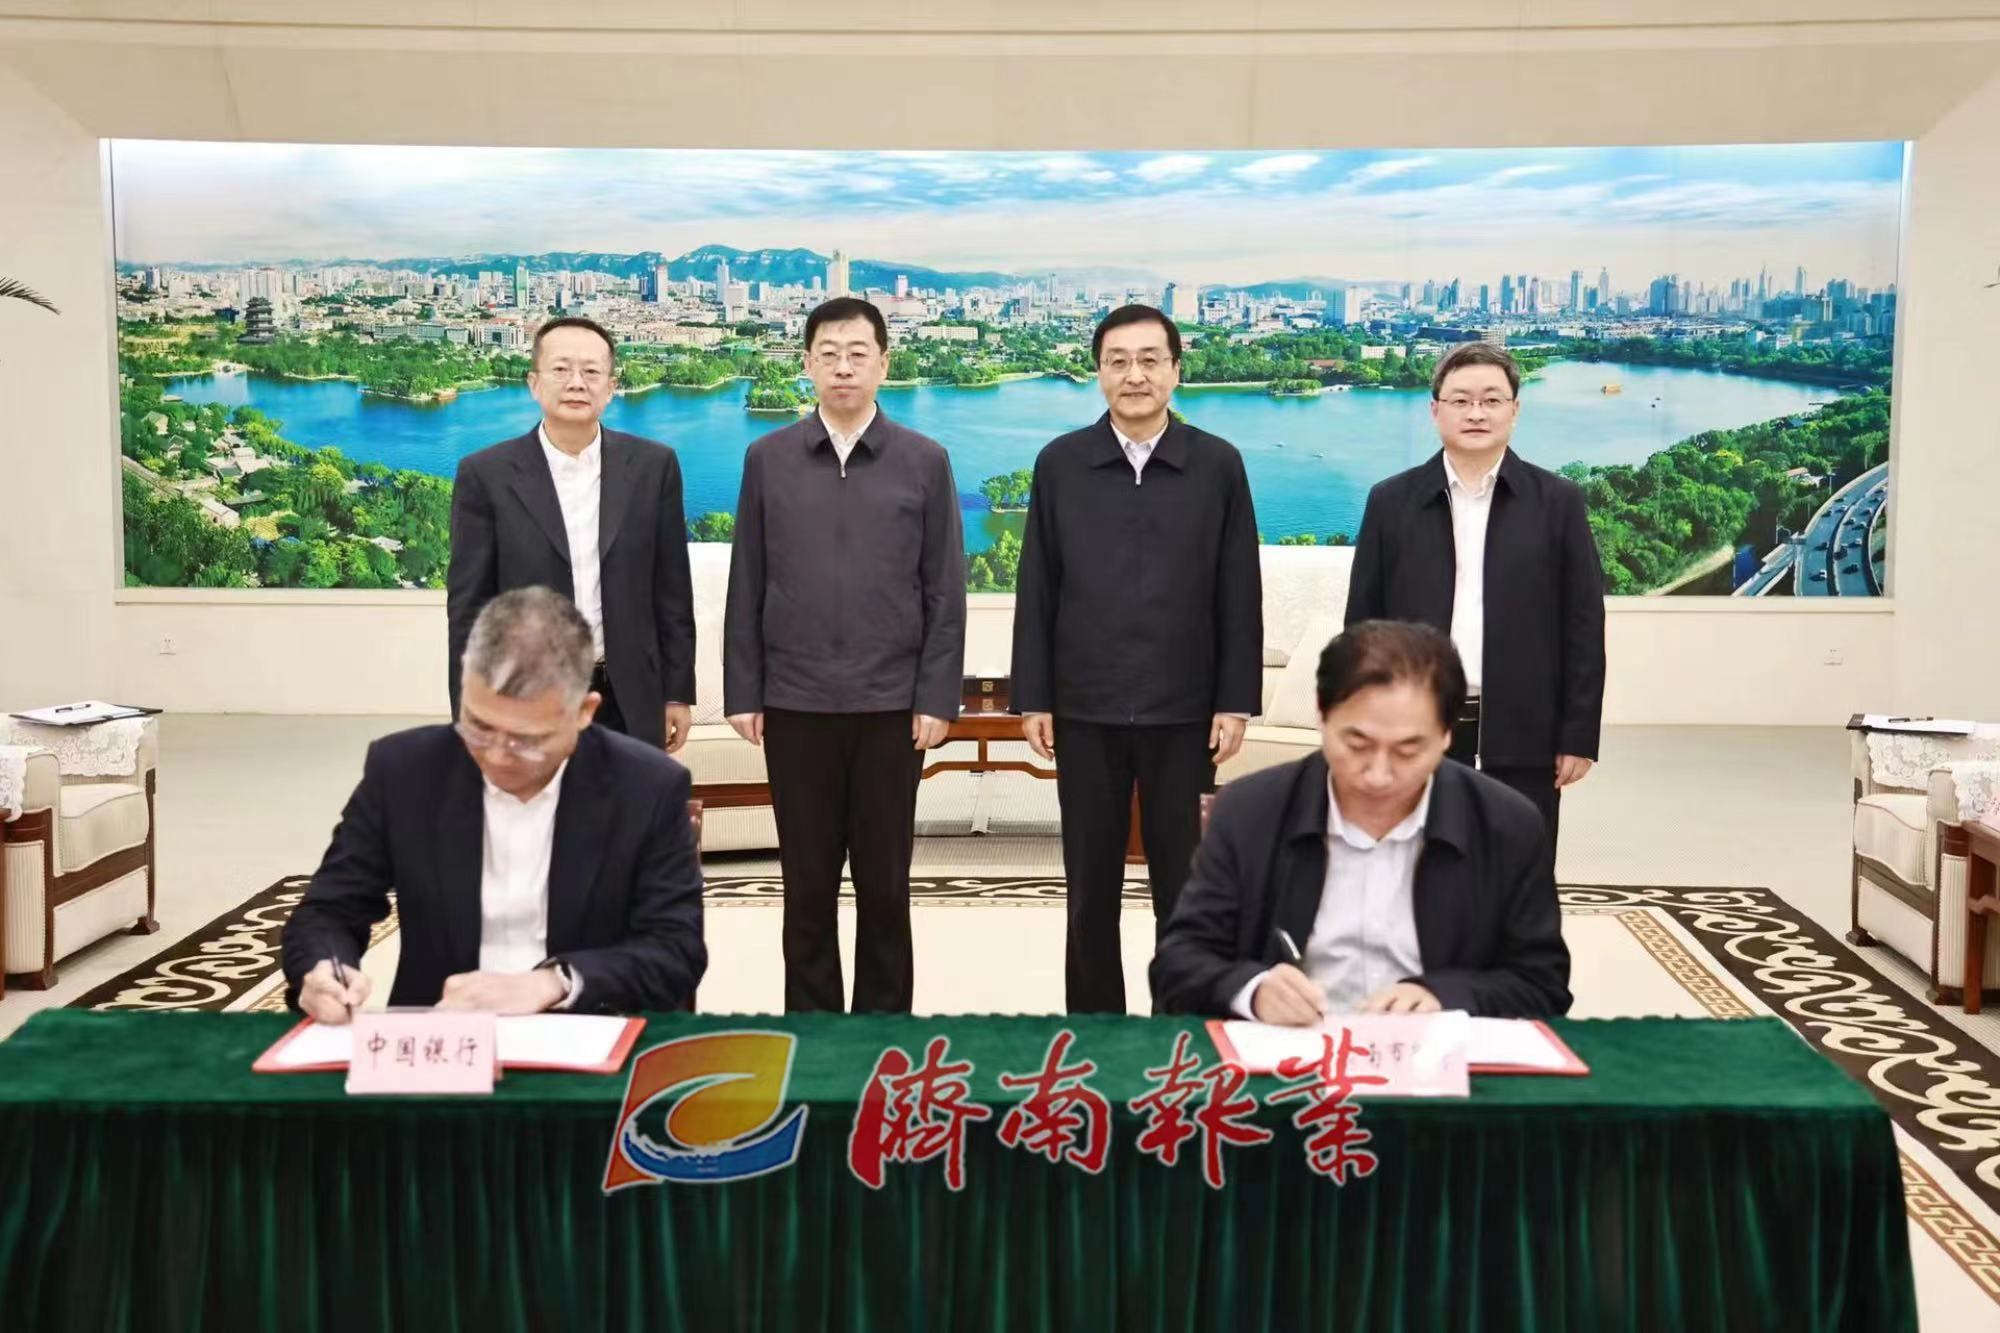 济南市政府与中国银行签署合作协议 刘强于海田会见葛海蛟一行并见证签约